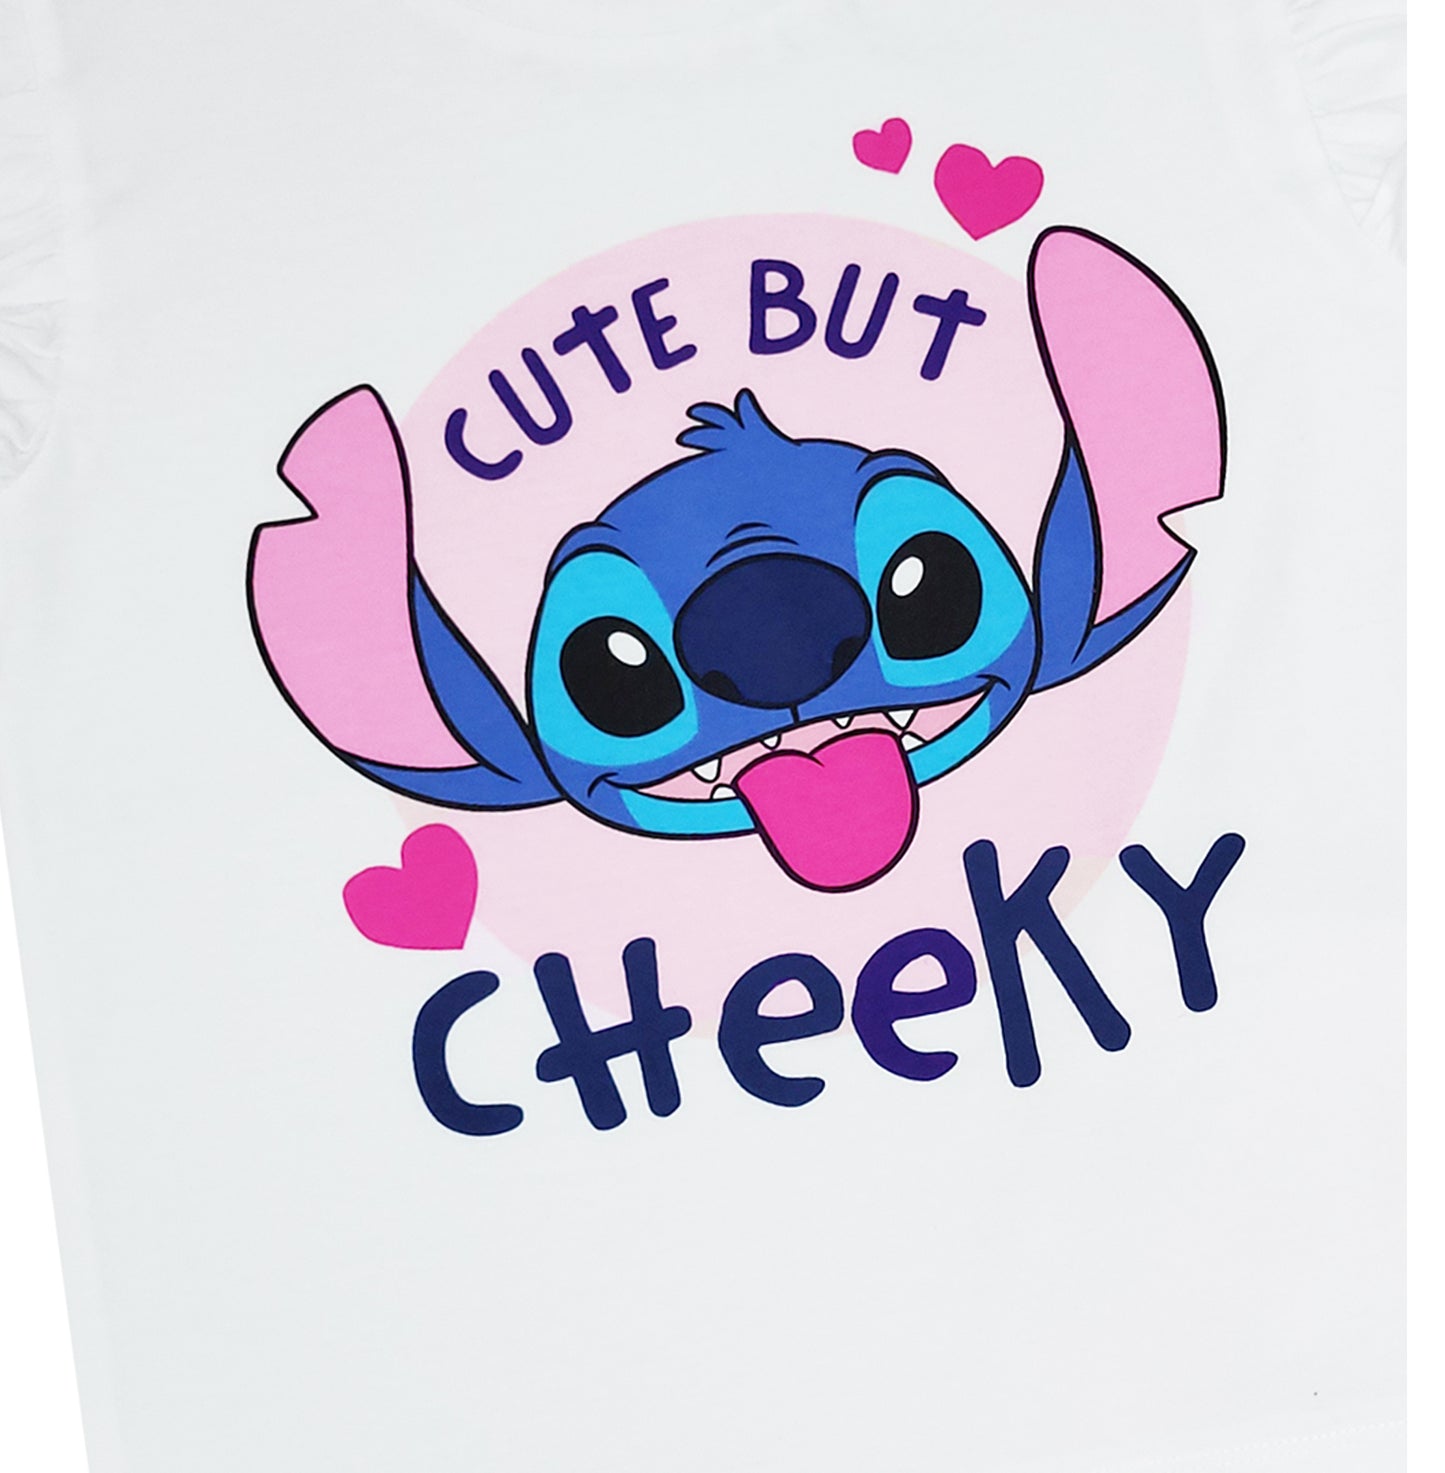 Girls Disney Lilo & Stitch Short Pyjamas